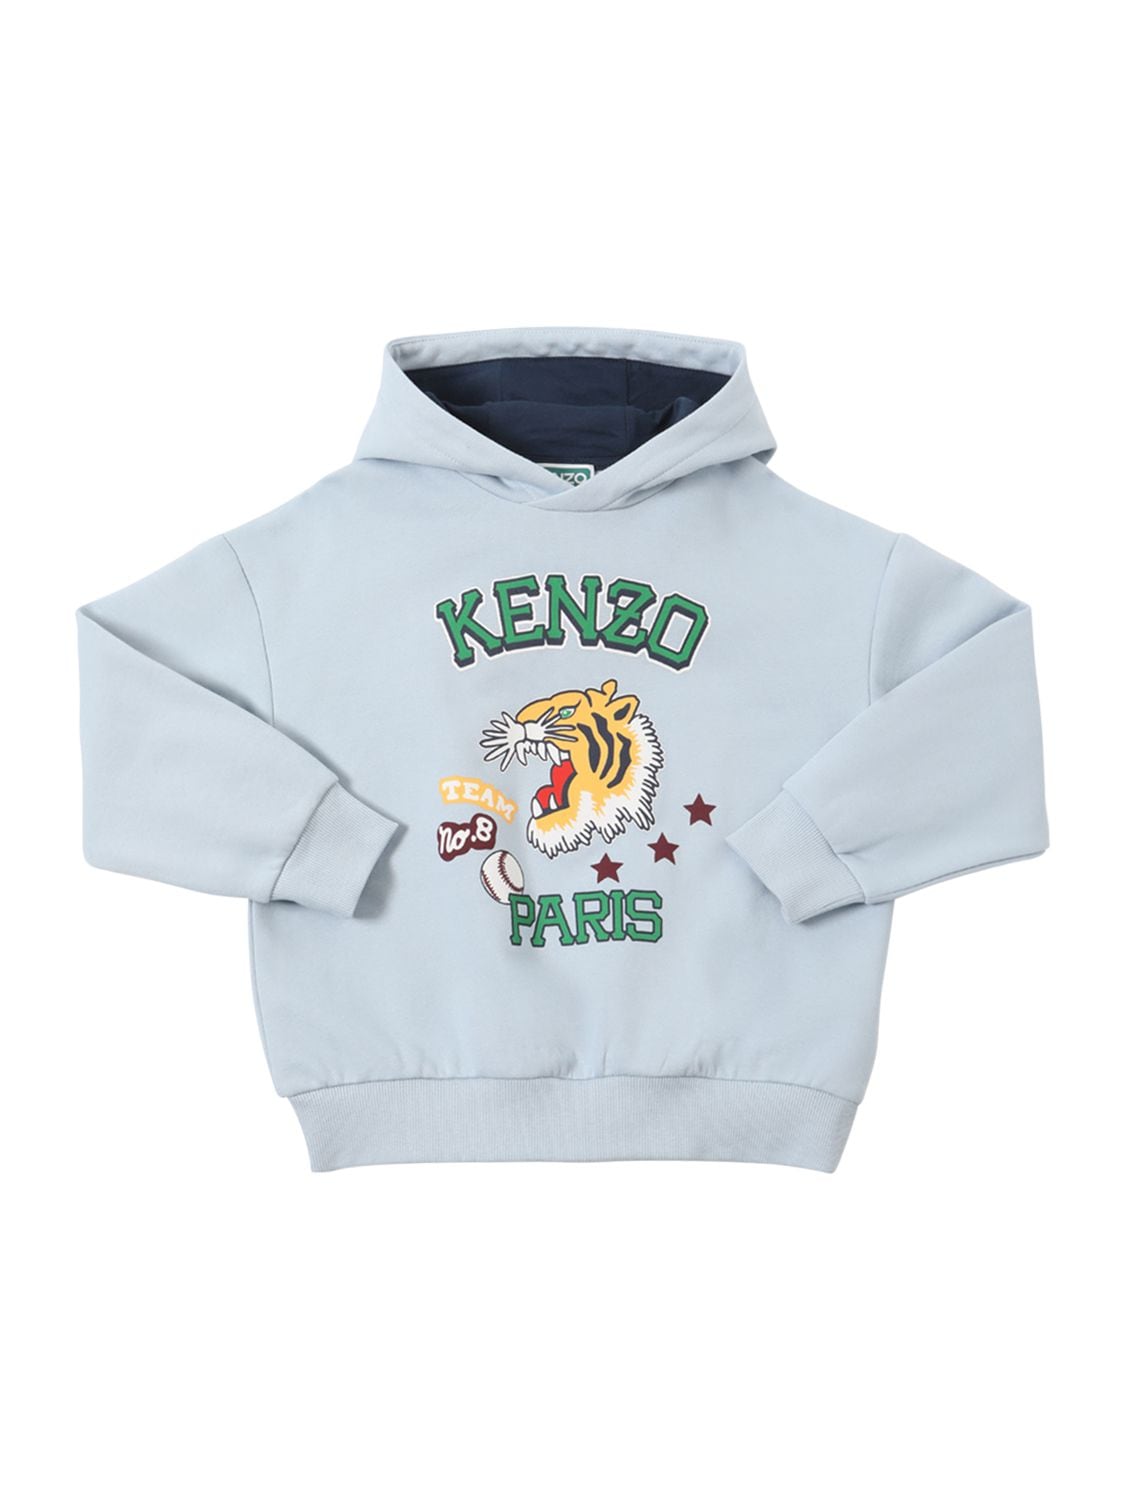 Kenzo Kids' Logo Printed Cotton Blend Hoodie In Pale Blue